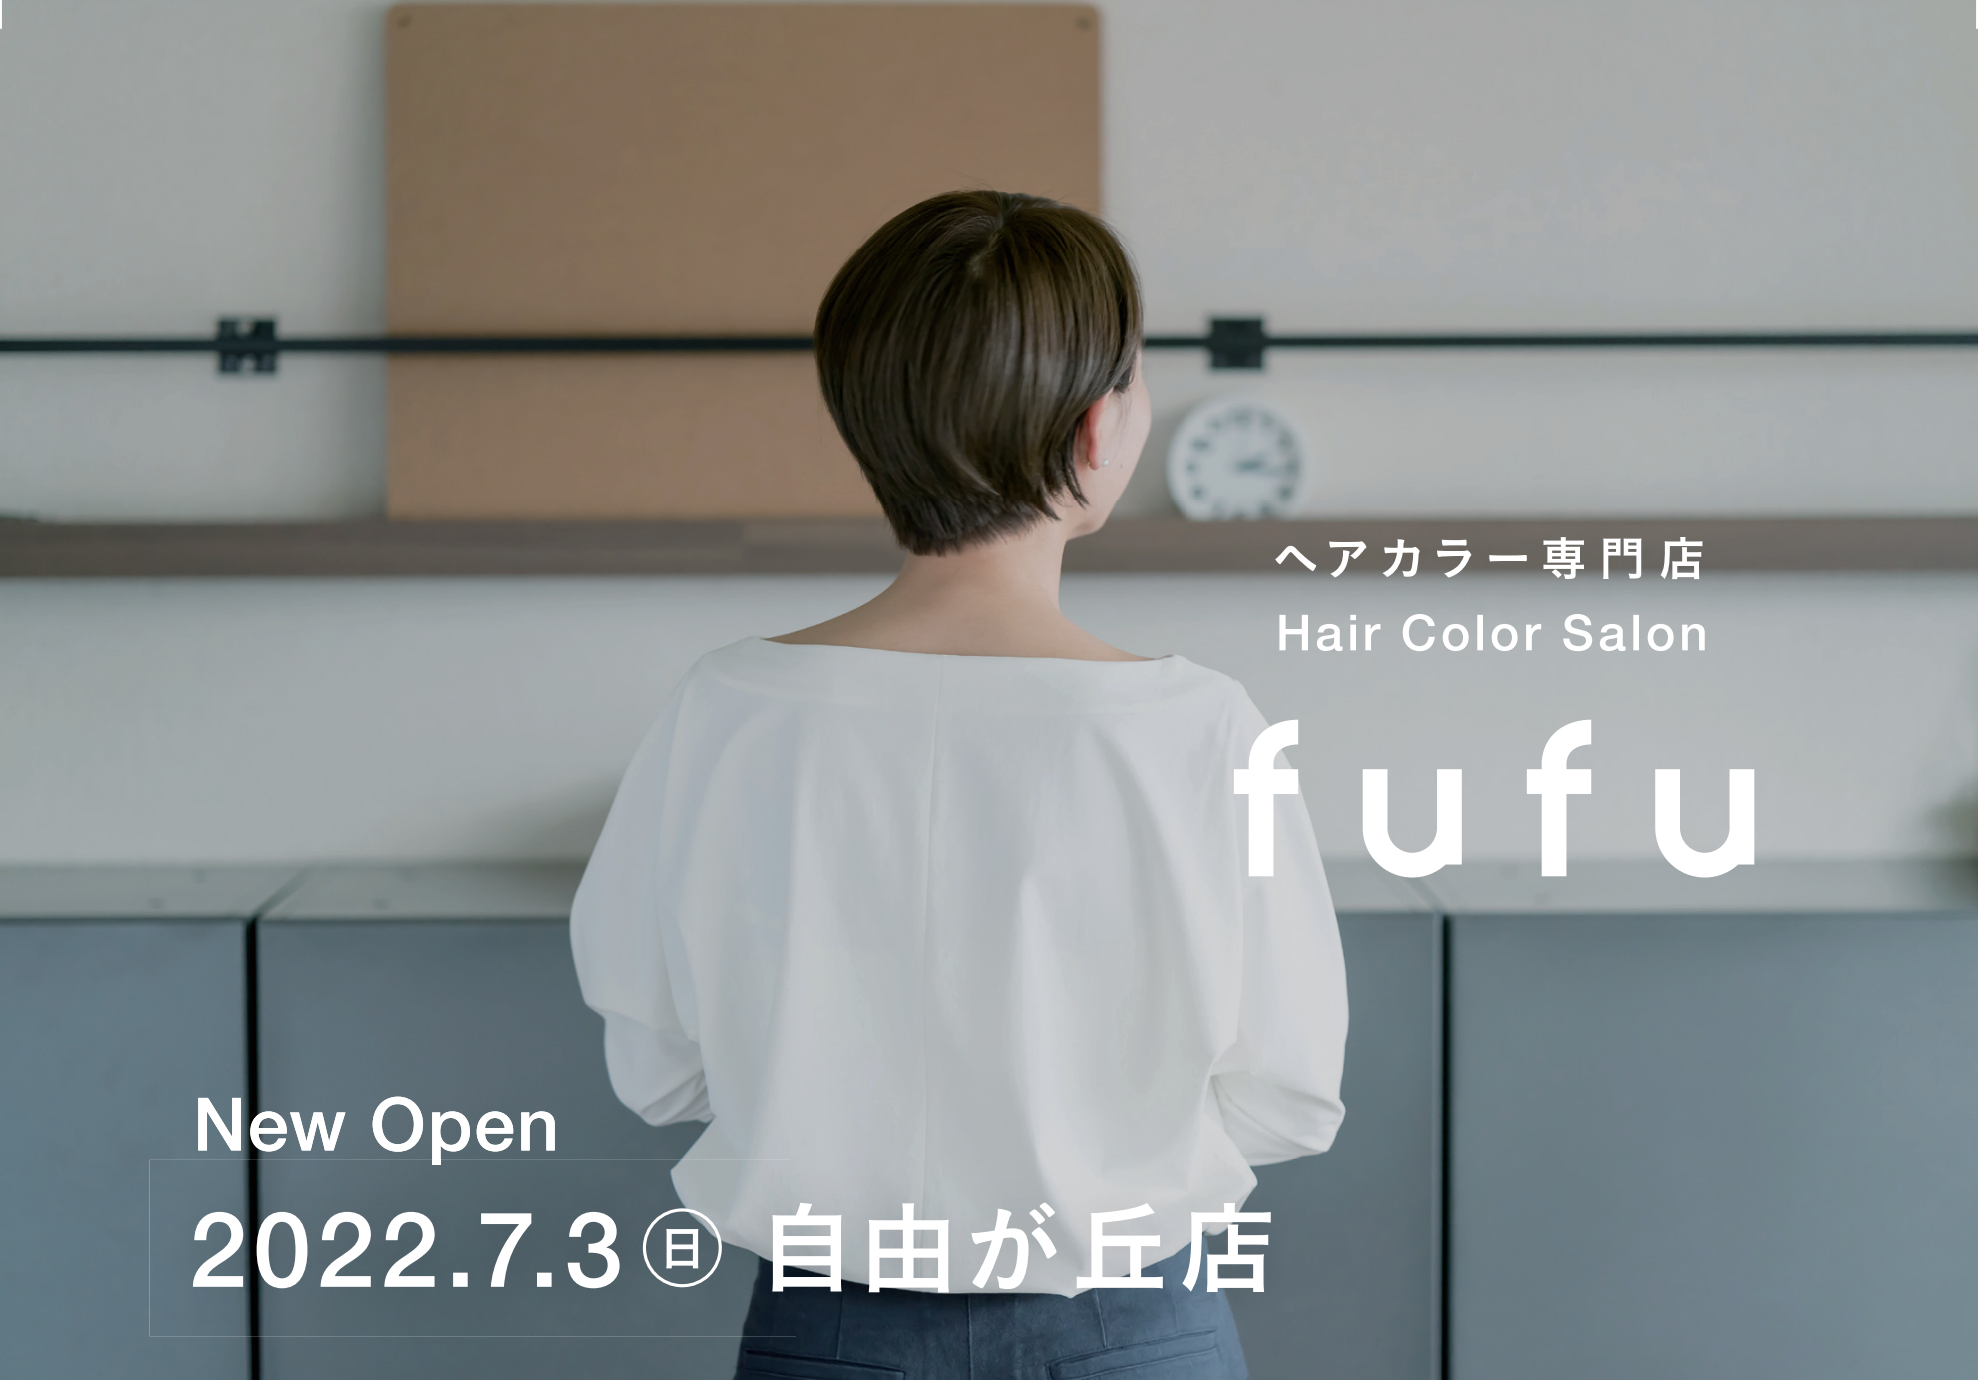 新fufu誕生。fufuブランドのサービス価値を強化し、より一層選ばれる